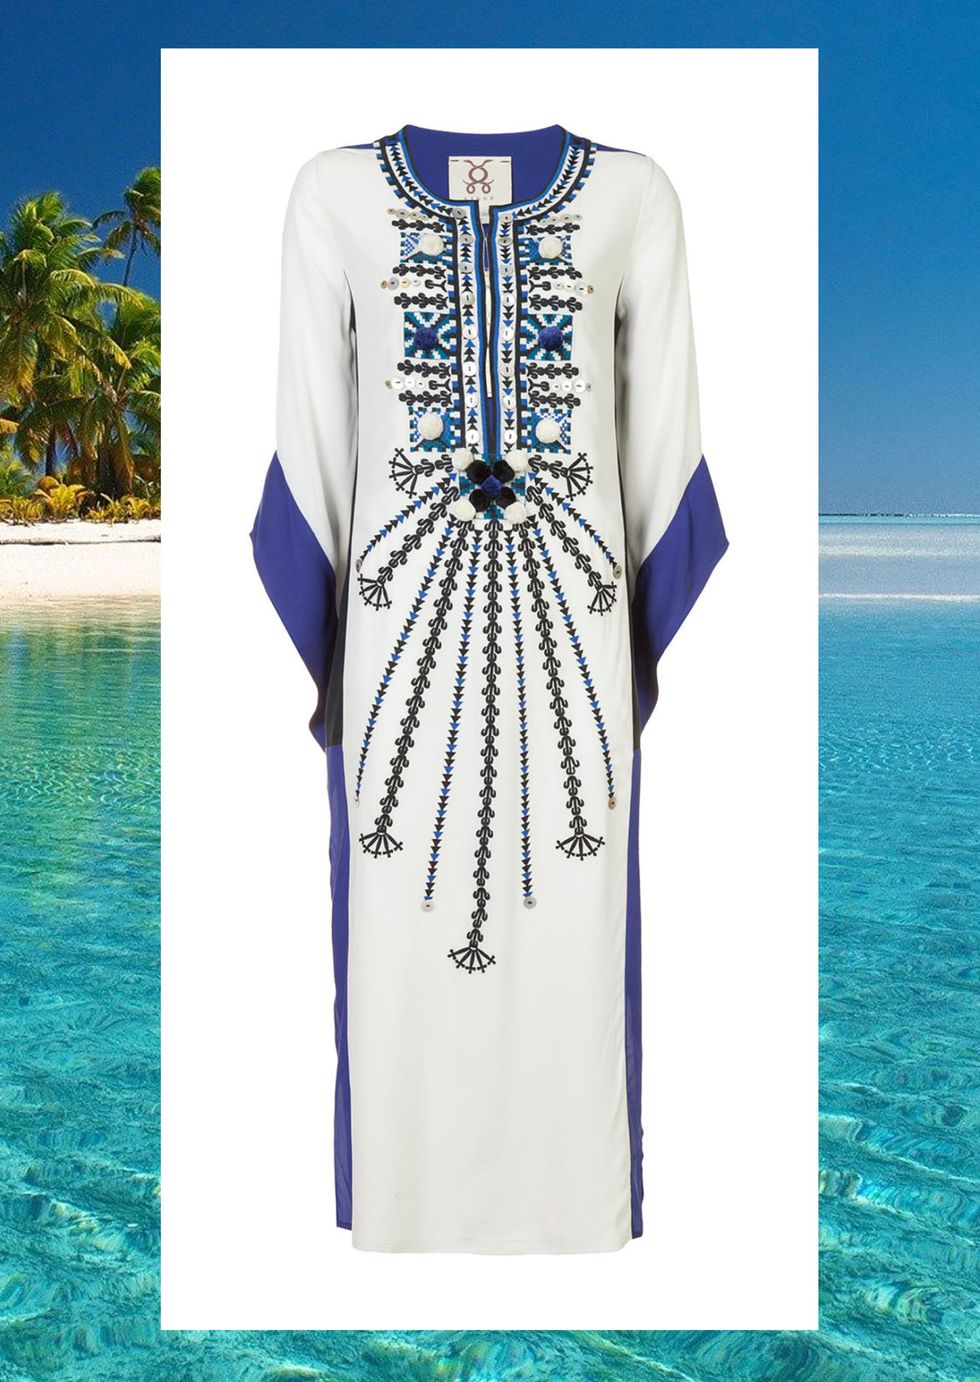 I caftani colorati o monocolore più belli e di tendenza per la moda mare 2017 da sfoggiare in spiaggia per essere super trendy.  